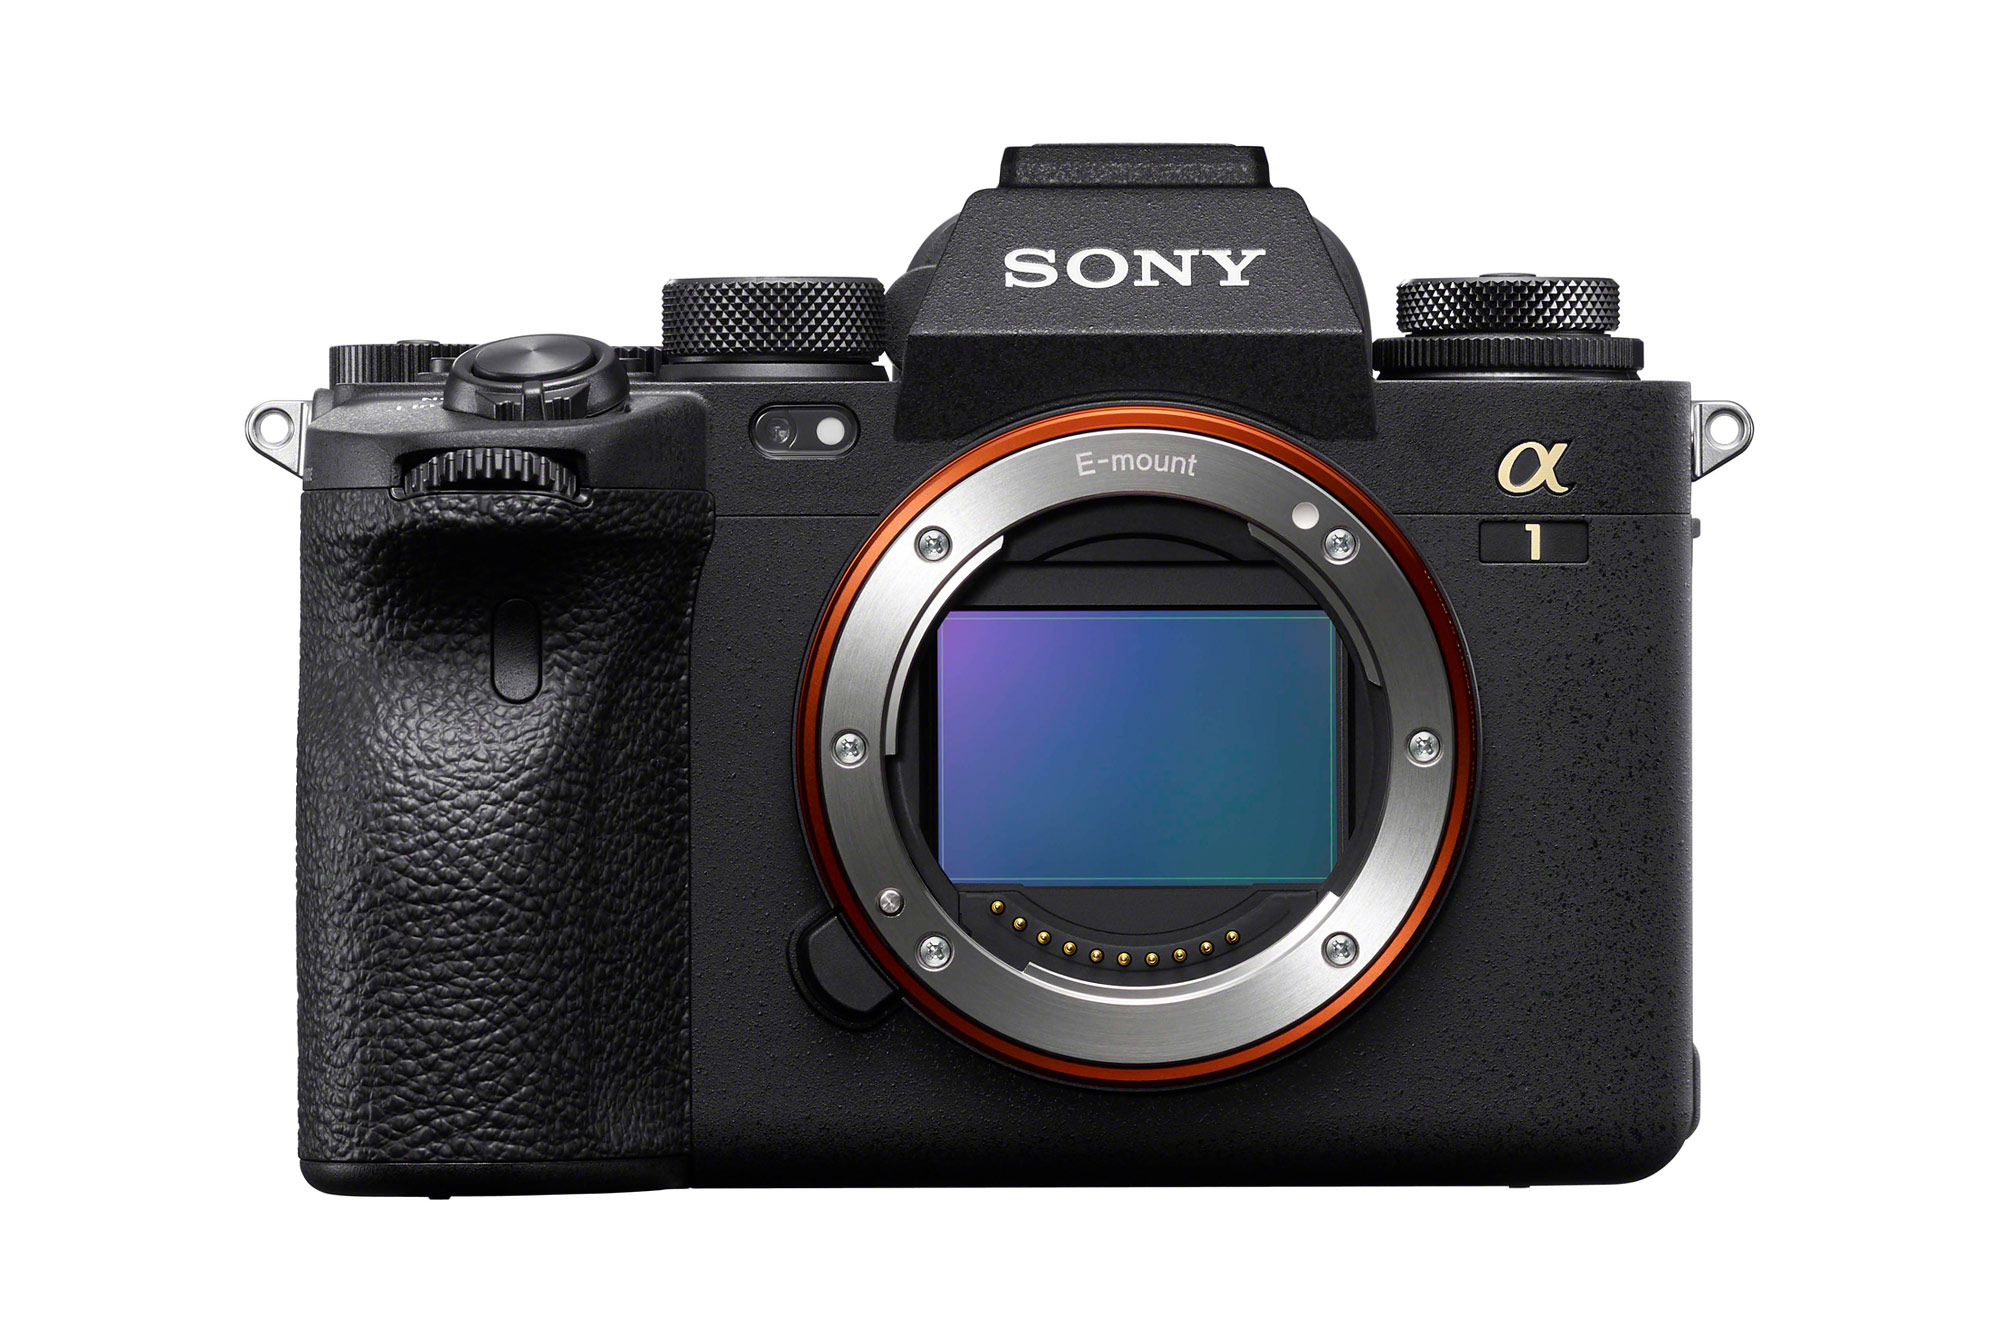 ソニー、フラッグシップのフルサイズミラーレス一眼カメラα1を発表。8K